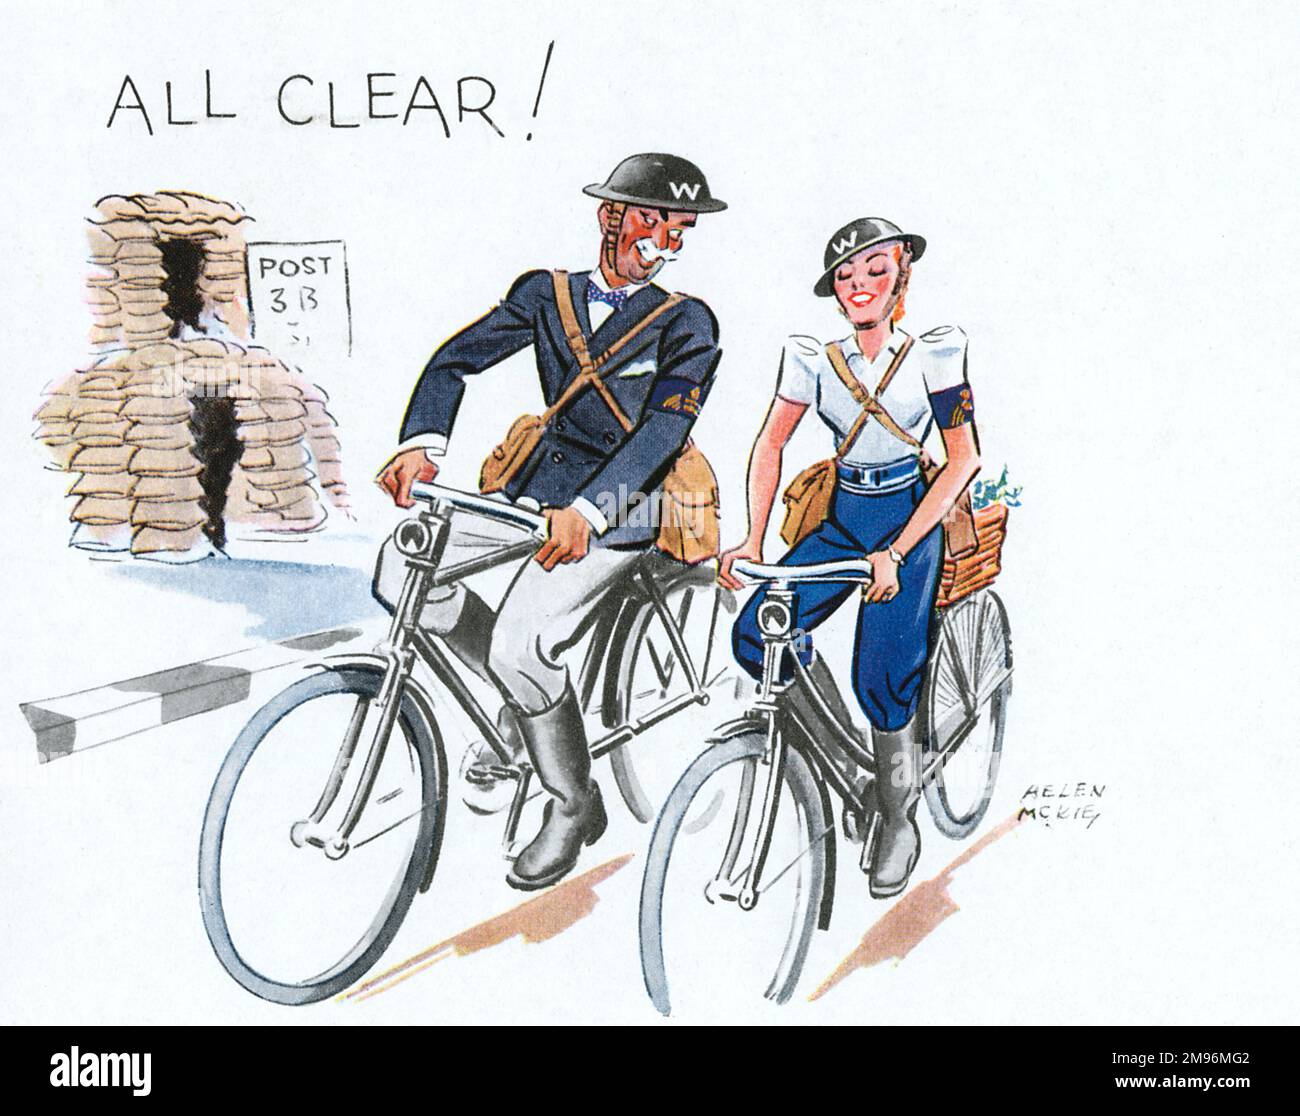 Jolly illustrazione di Helen McKie che mostra un vecchio uomo piuttosto lecherous che guarda Air RAID Patrol Warden in bicicletta accanto a un giovane, bella collega femminile. Foto Stock